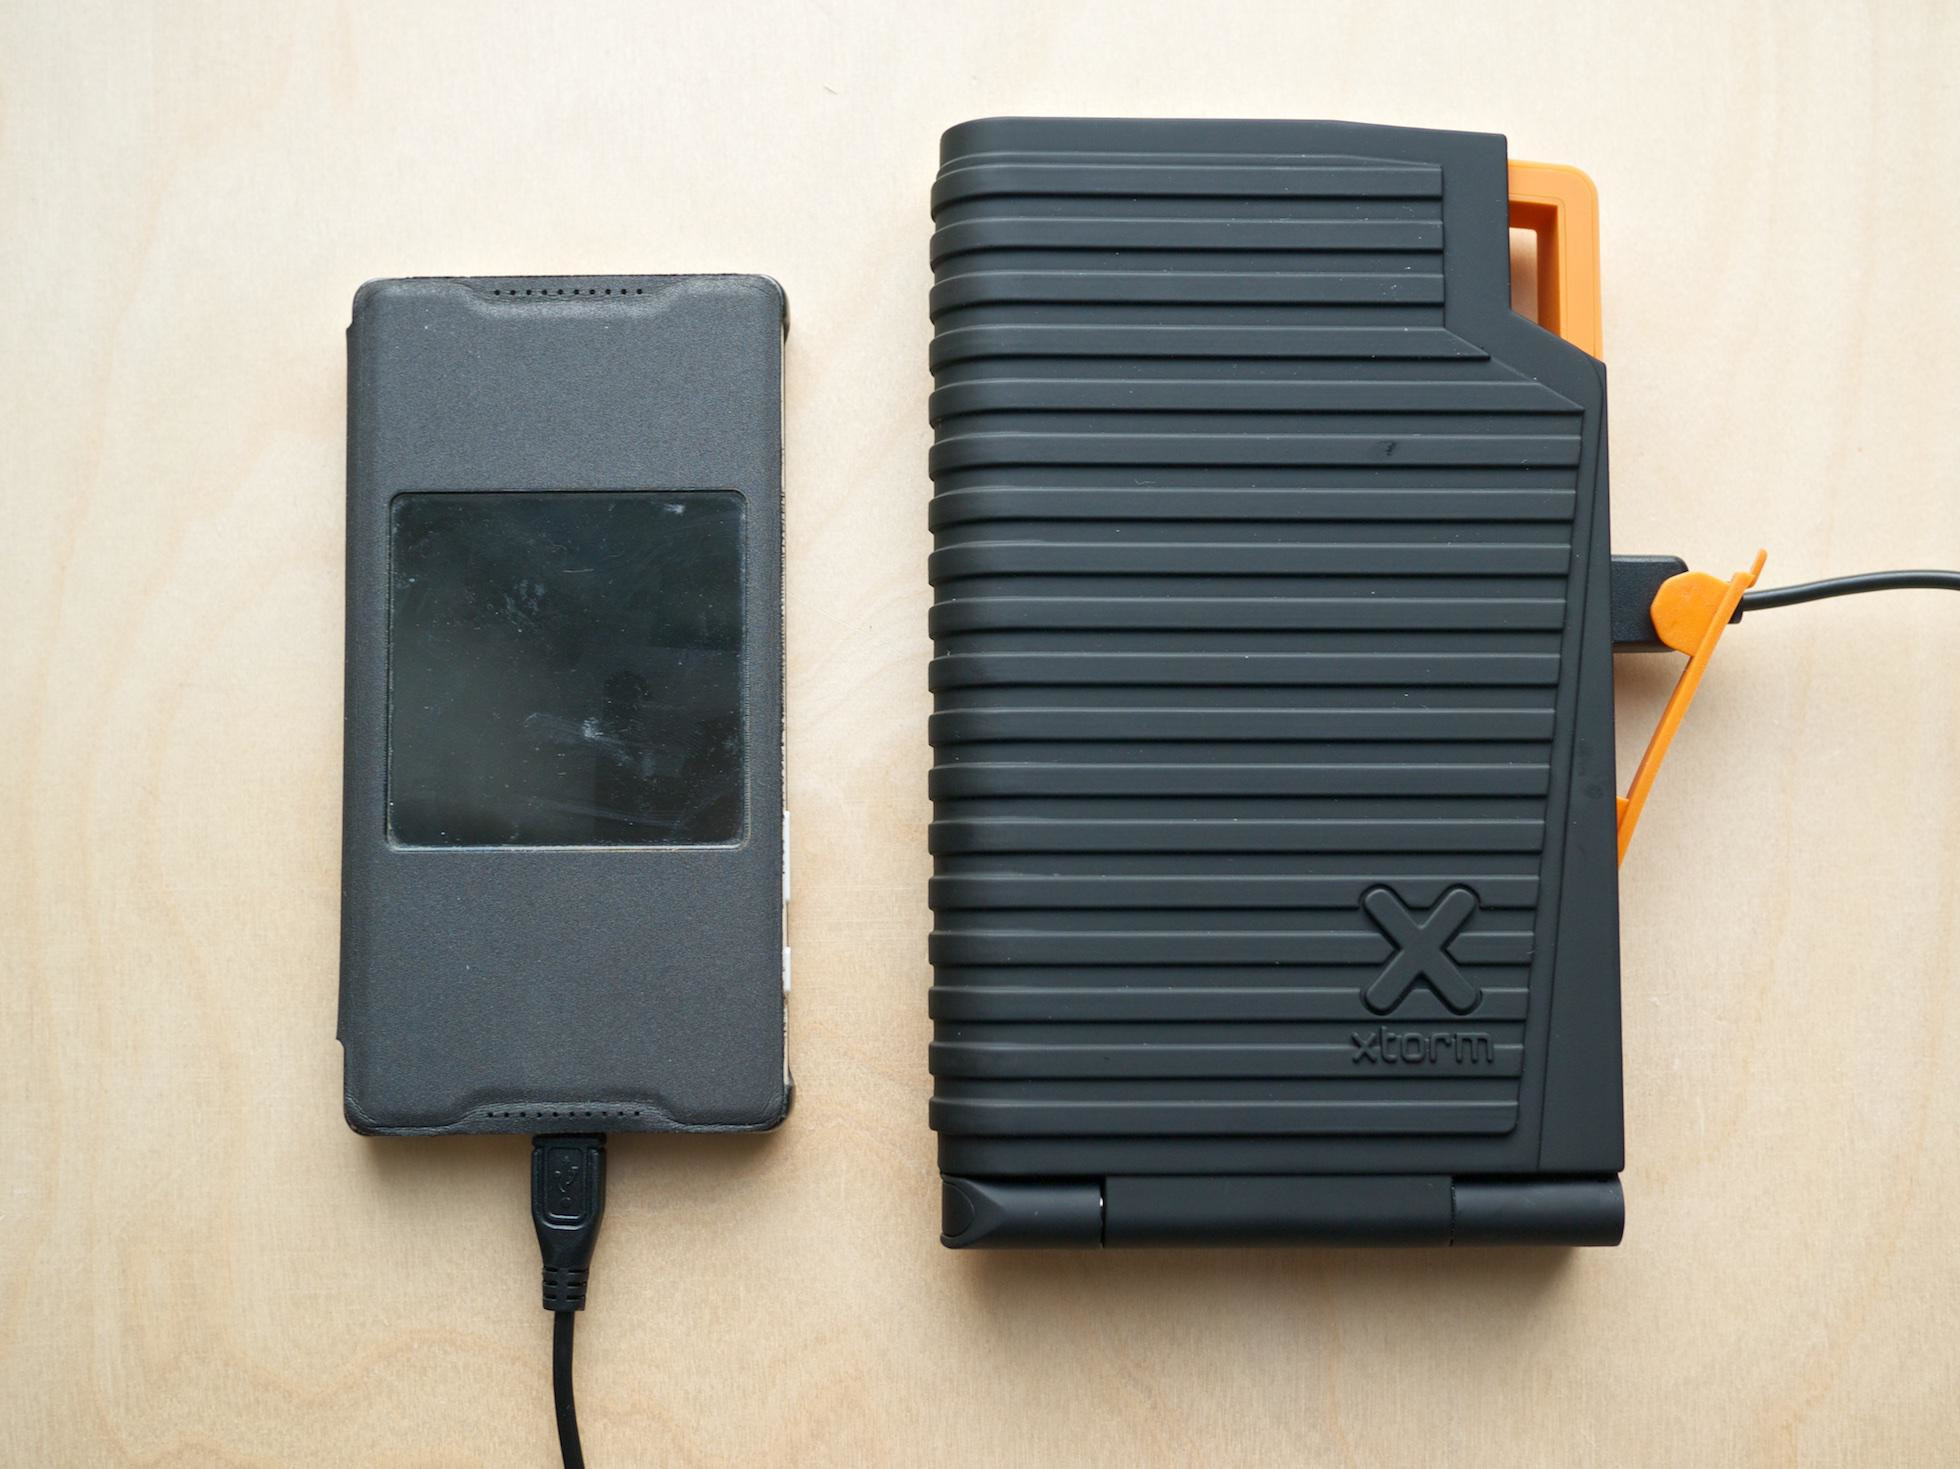 Solárna nabíjačka Xtorm Evoke s 10000 mAh akumulátorom a dvojicou nabíjacích USB portov